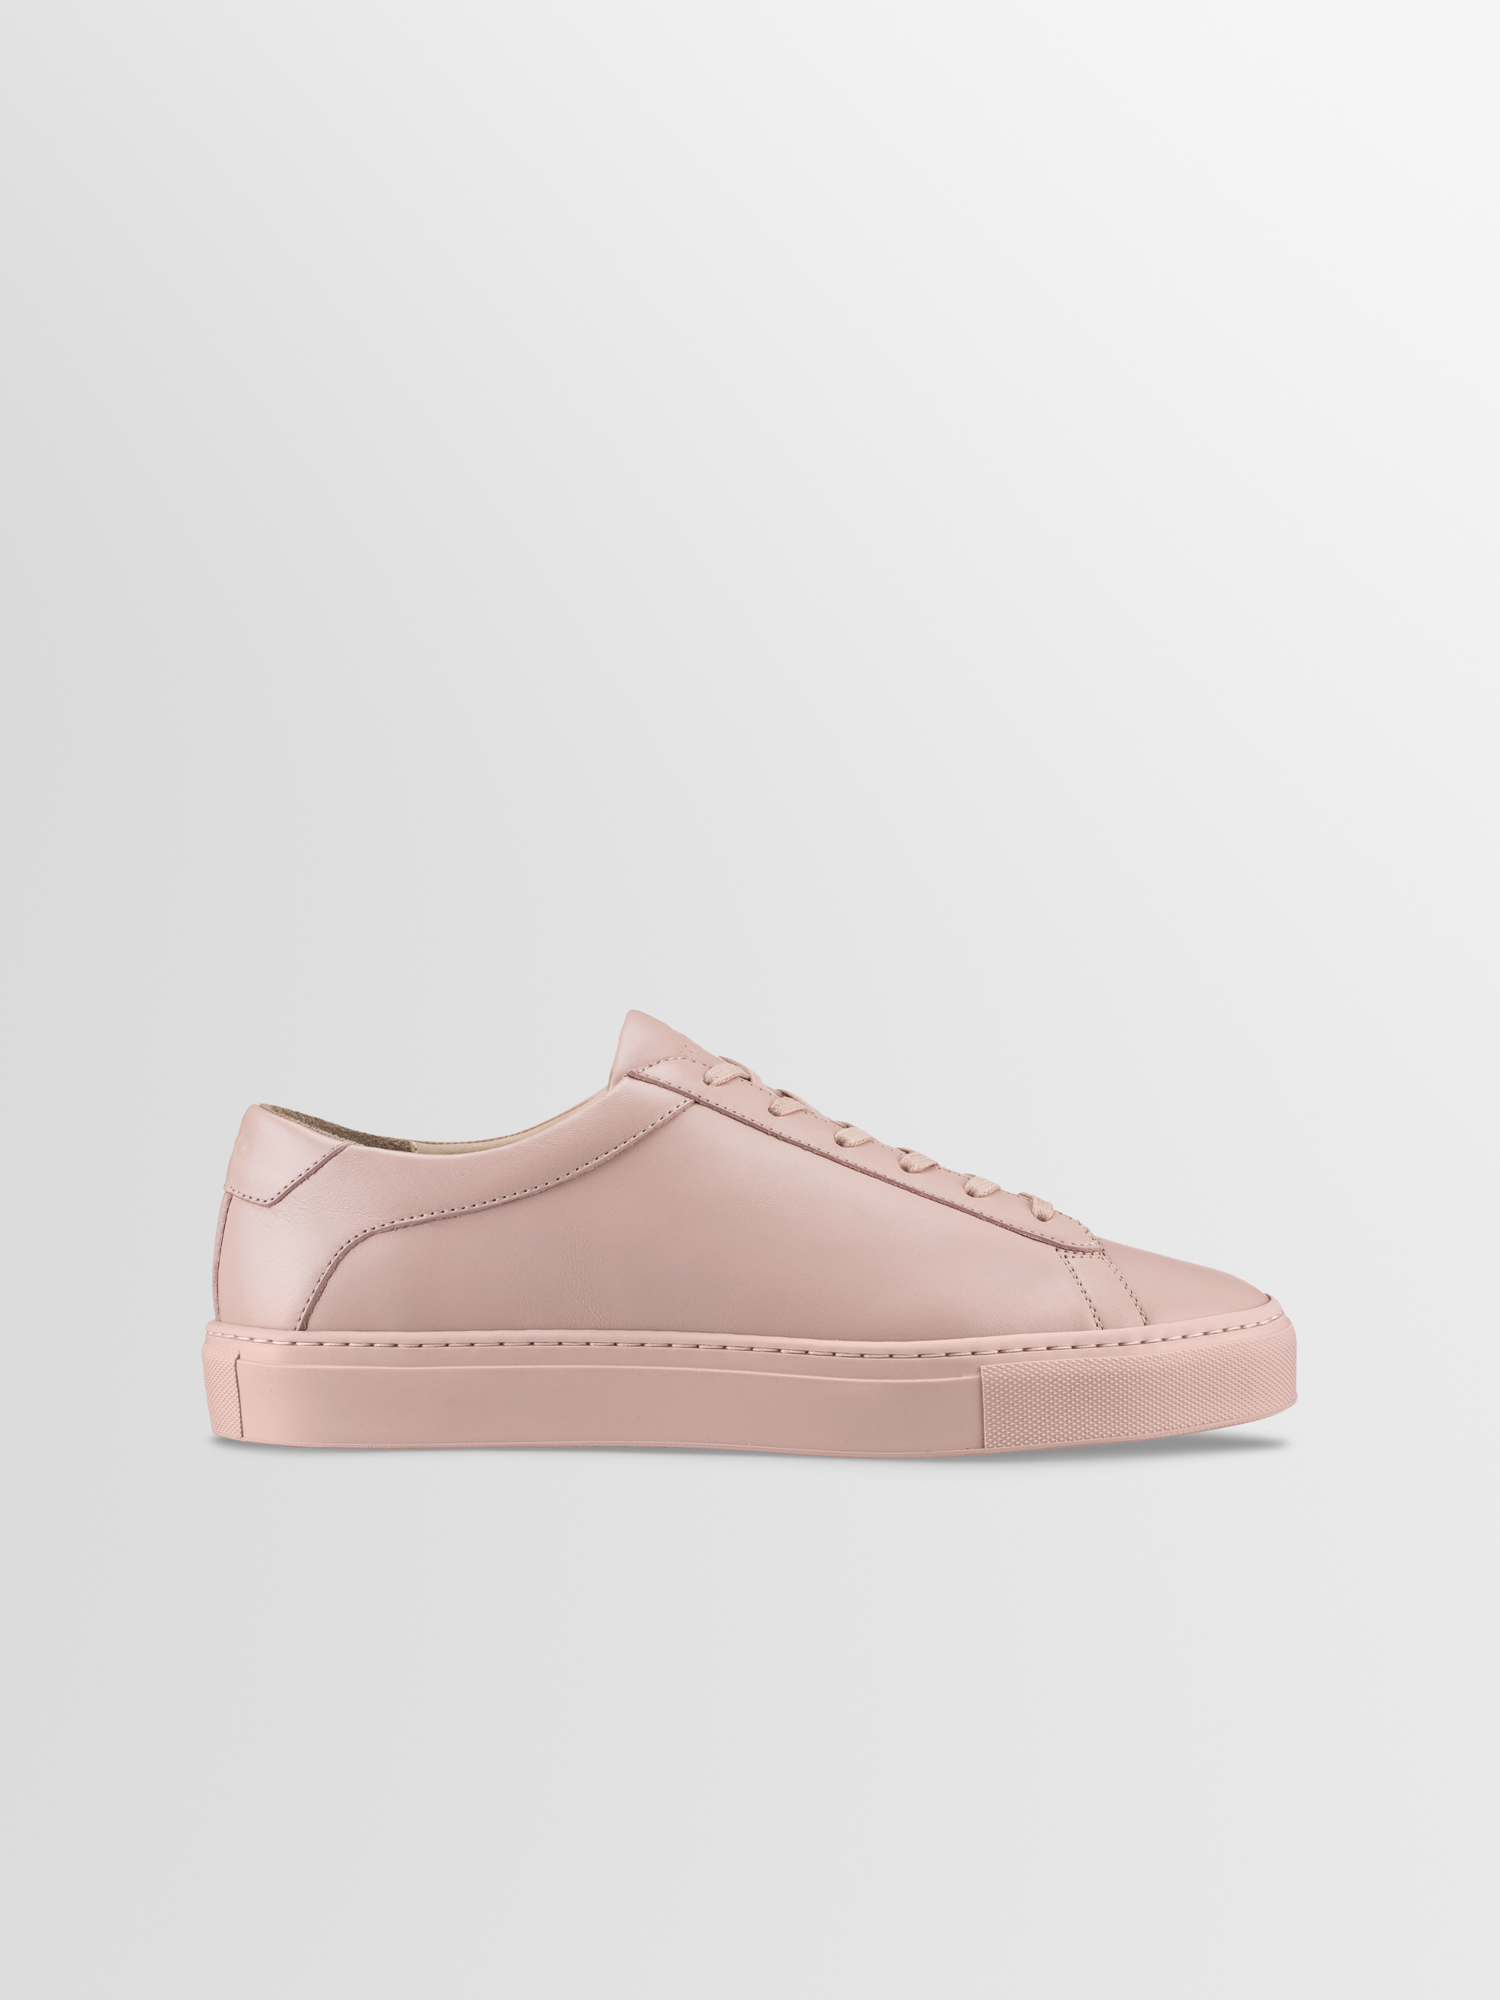 Men's Pink Low-top Leather Sneakers, Capri in Pink Quartz